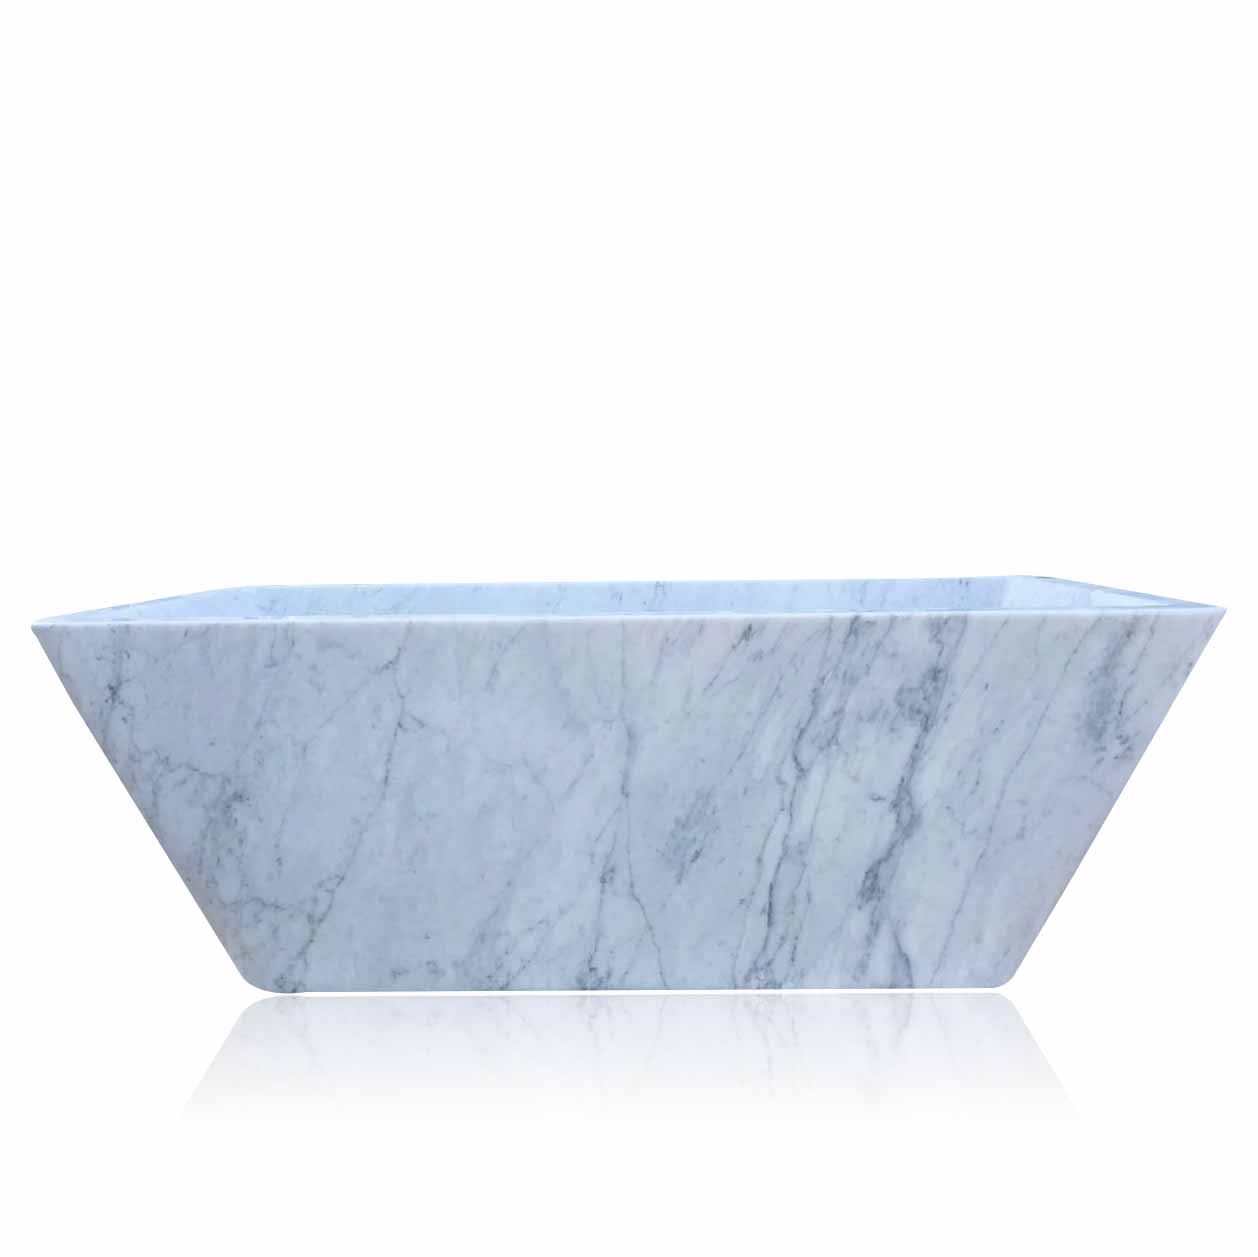 Sleight Edge Marble Stone Bathtub